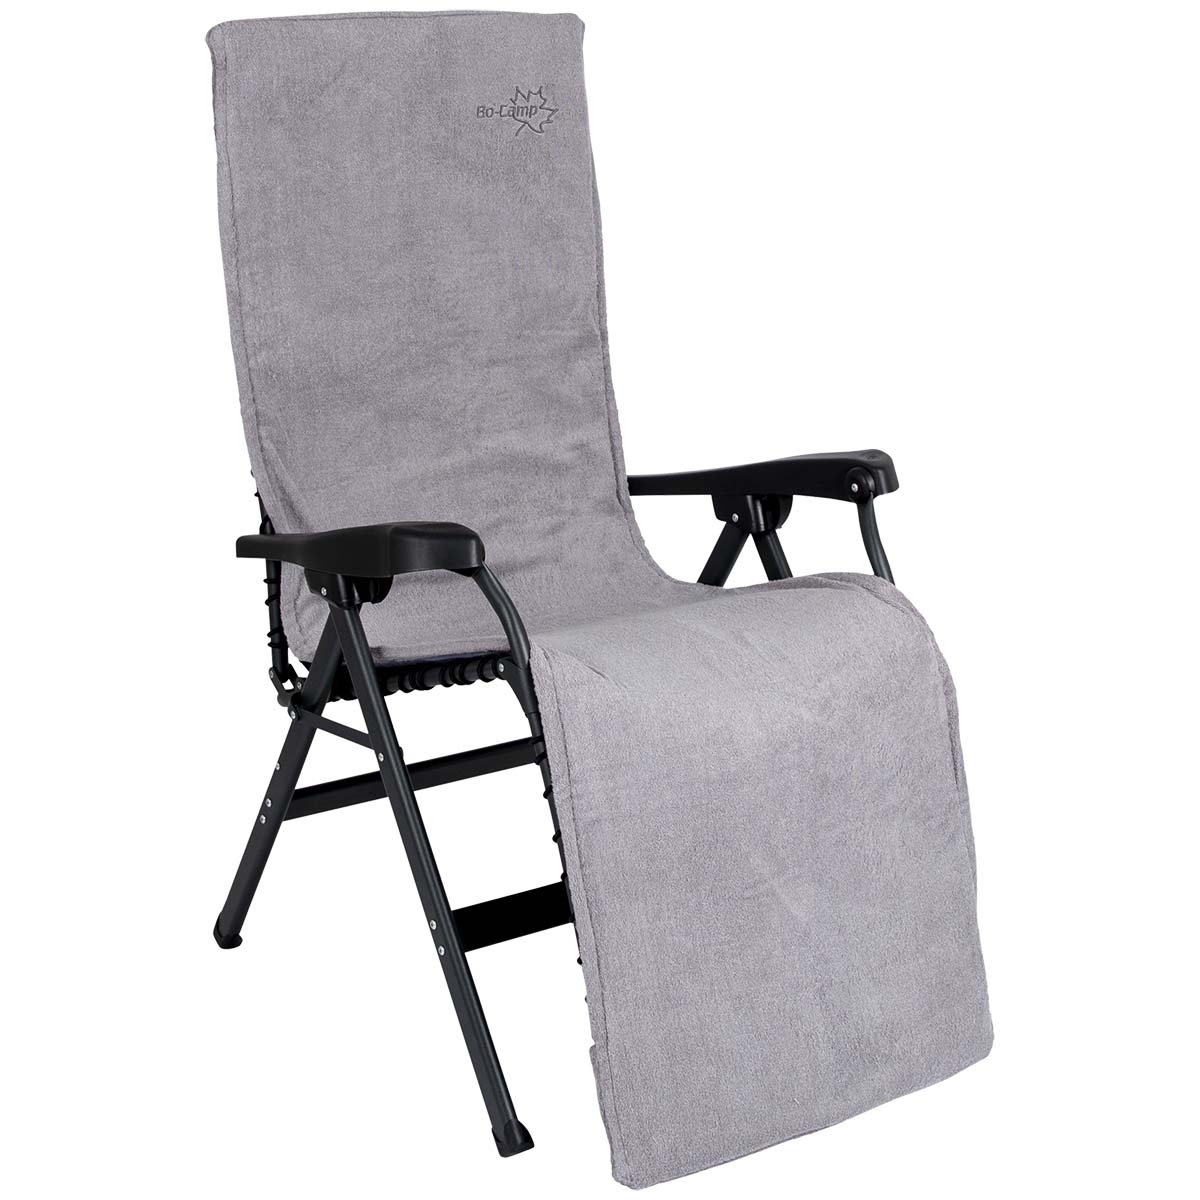 1849282 Een extra zachte stoelhoes voor (kampeer)stoelen. Deze universele stoelhoes zorgt voor optimaal zitcomfort en biedt bescherming aan de stoel. Extra comfortabel door het gepolsterde badstof. De stoelhoes is universeel toepasbaar.